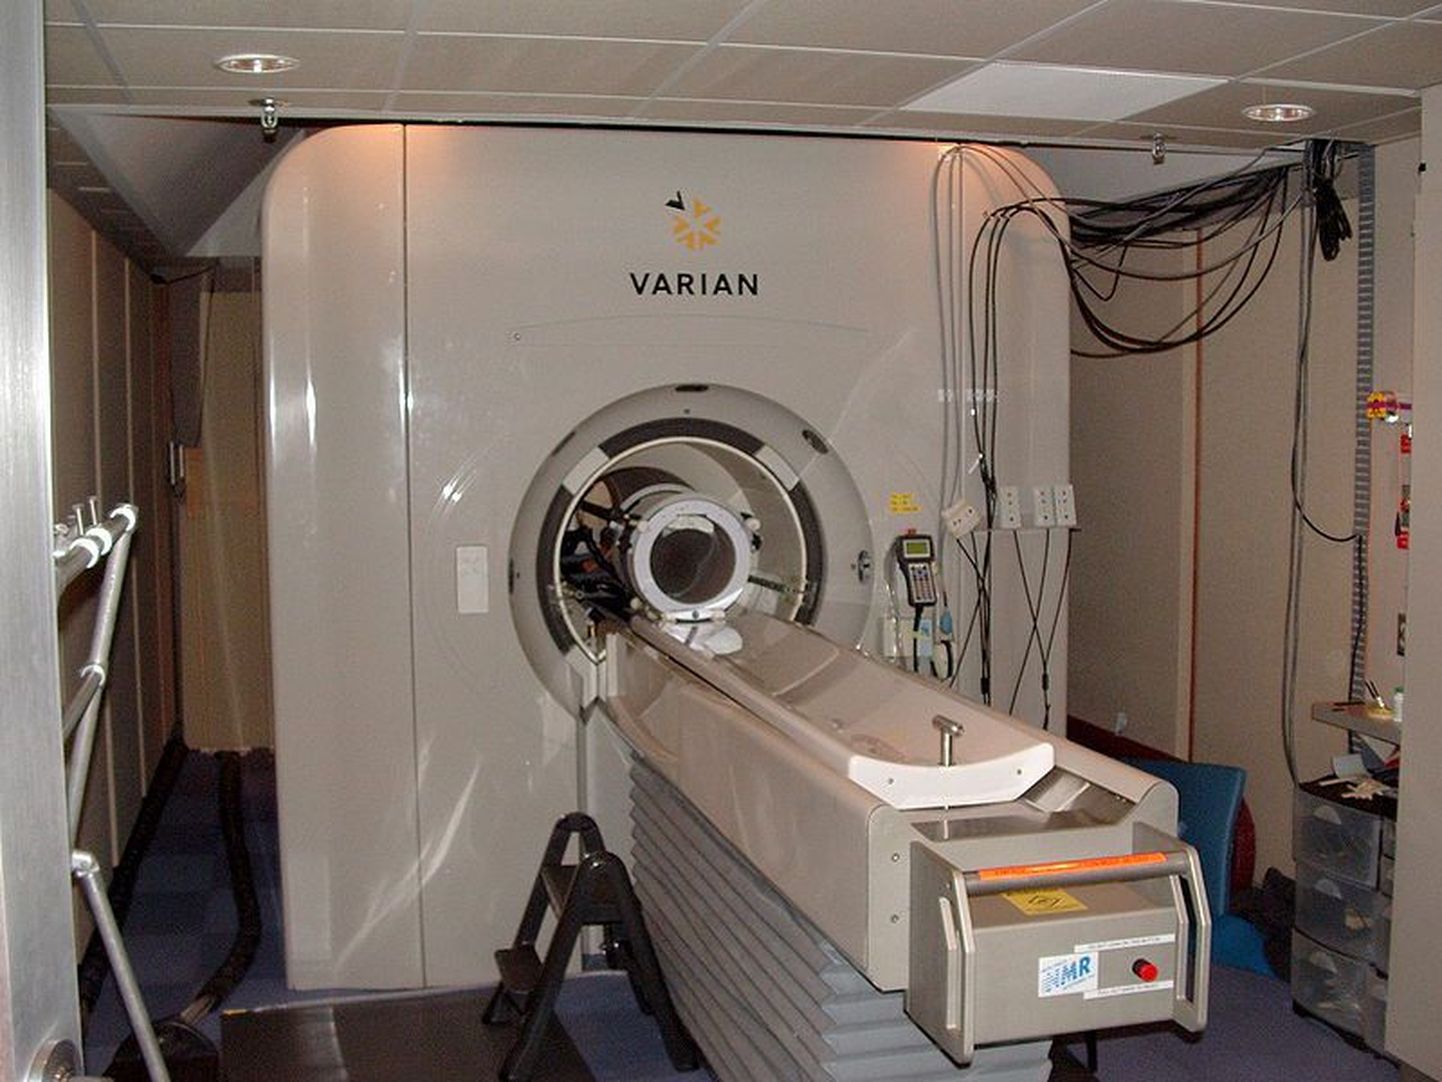 Berkeley ülikooli (California) 4T fMRI (funktsionaalse magnetresonantskuva) skanneerimisseade.